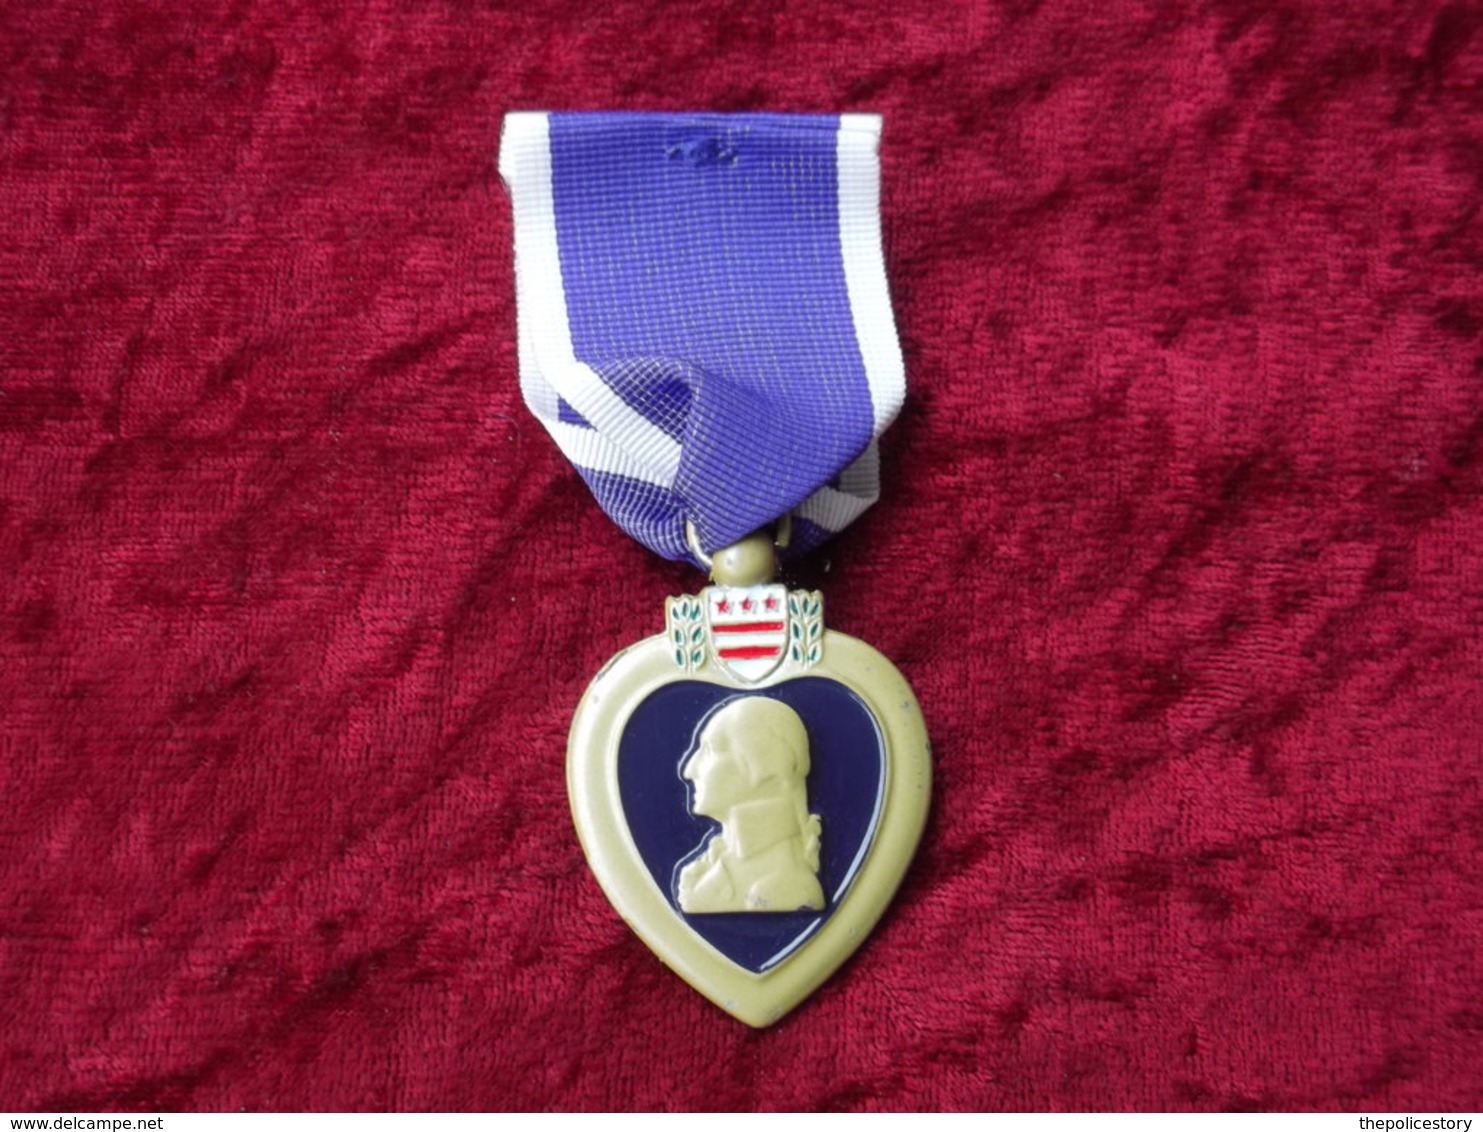 Purple Heart For Military Merit Stati Uniti Con Nastrino - Stati Uniti